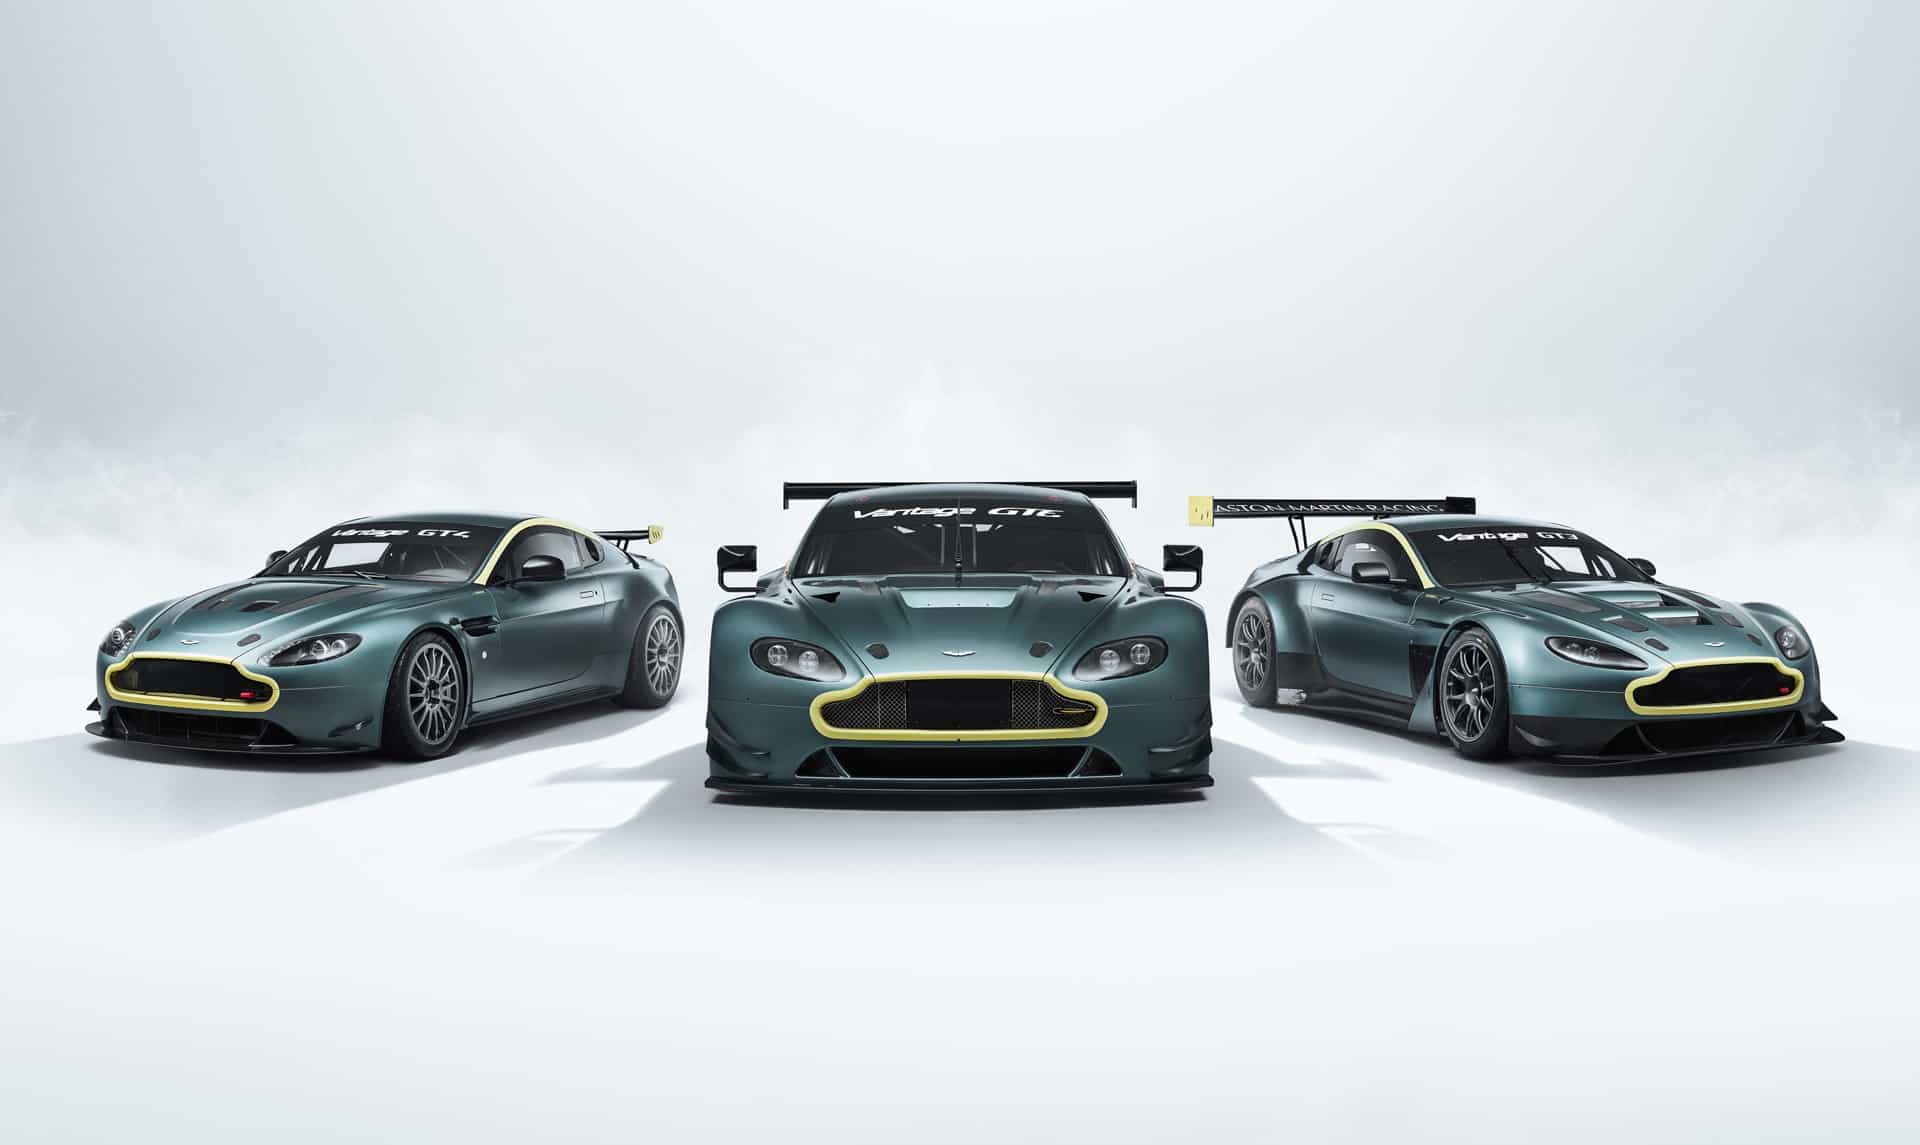 Aston Martin puts previous gen. Vantage race cars for sale!